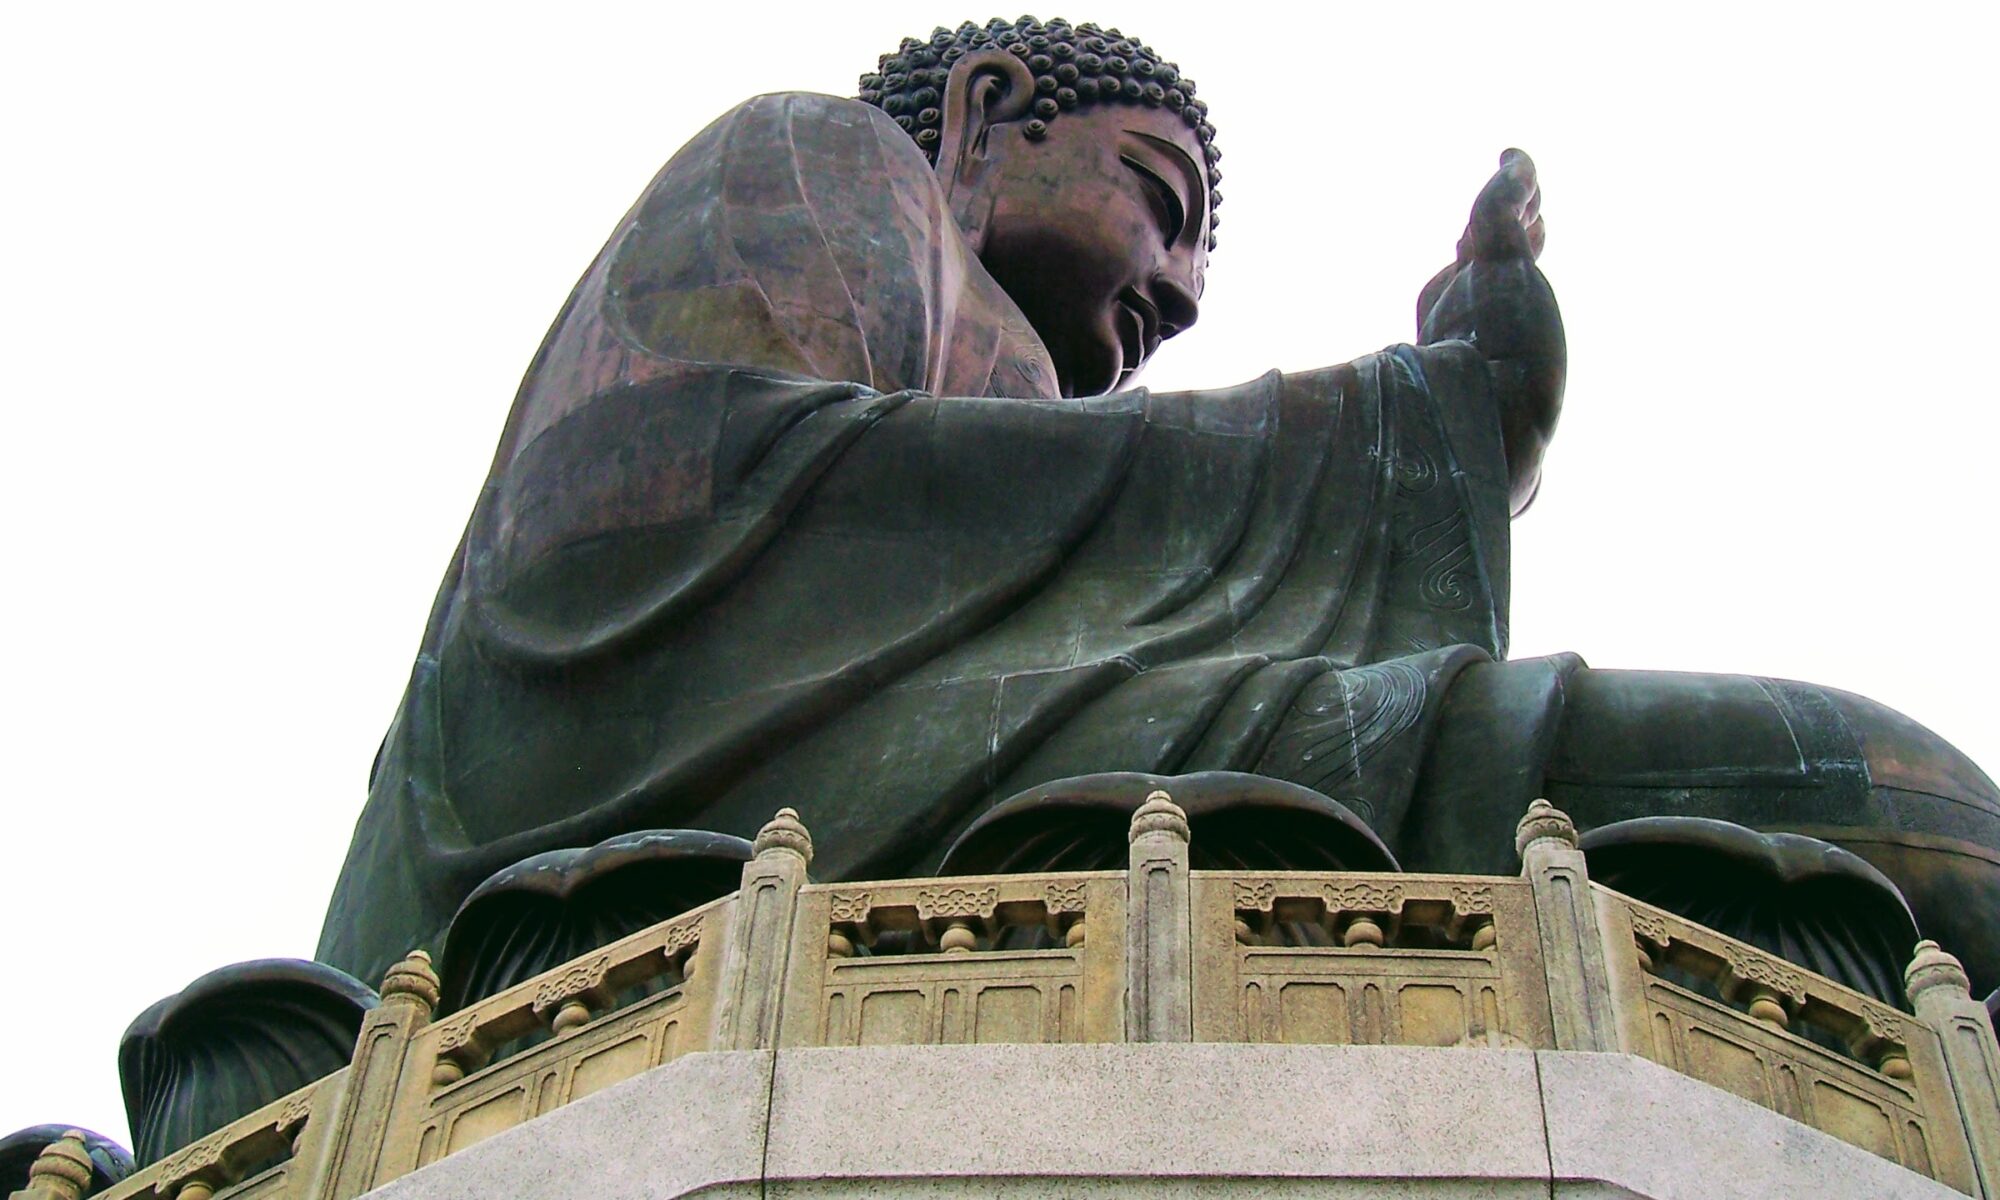 Image – ‘Big Buddha’ - Tian Tan Buddha, Ngong Ping, Lantau Island, in Hong Kong - May 2008